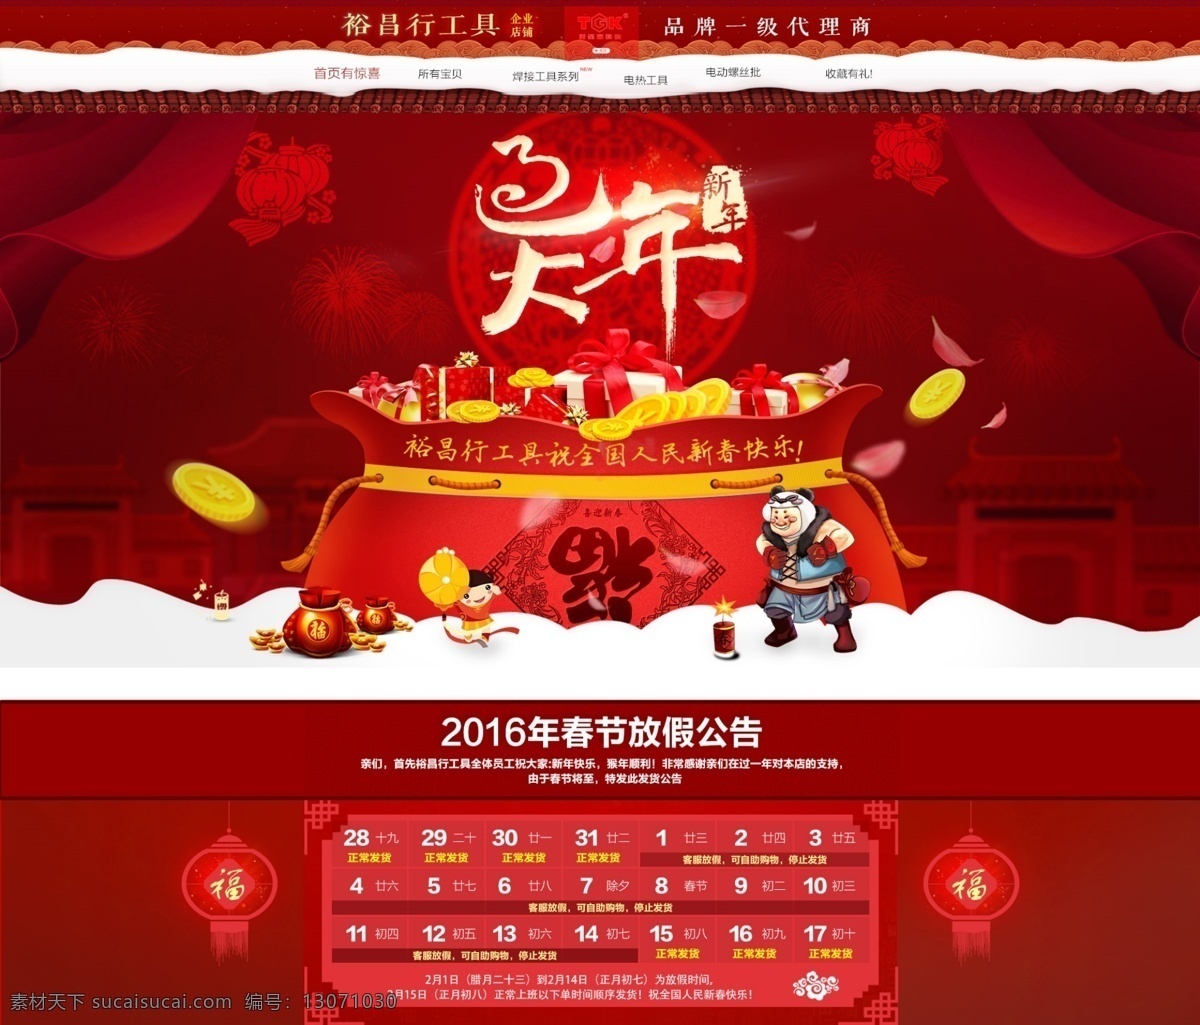 2016 猴年 淘宝 天猫 大年 年货 节 首页 装修 淘宝素材 淘宝设计 淘宝模板下载 红色